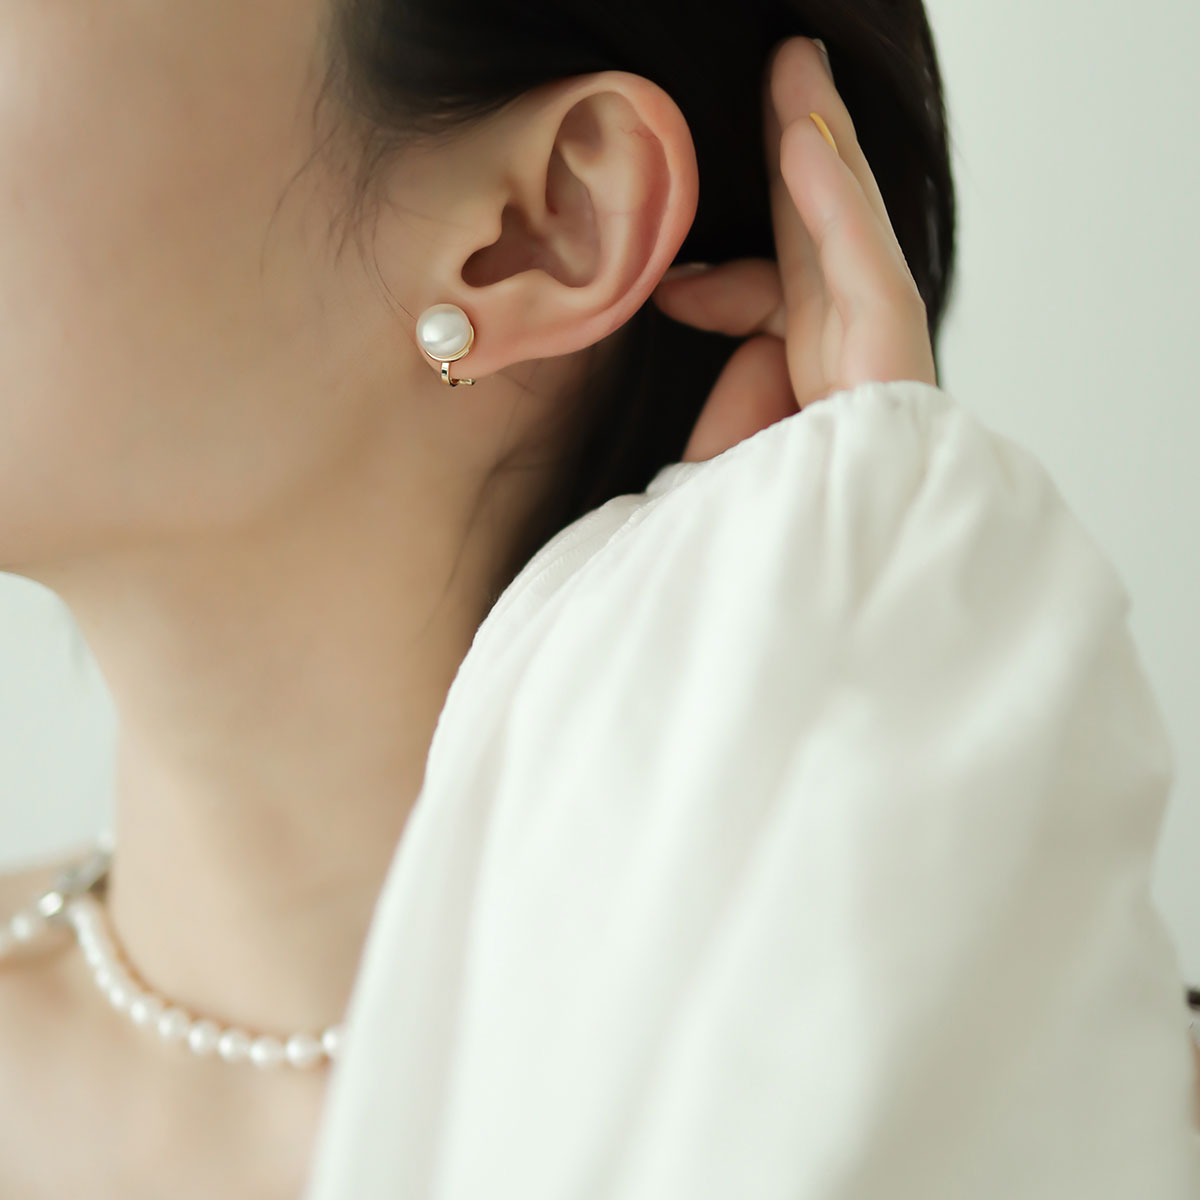 Women wear freshwater pearl clip on earrings.